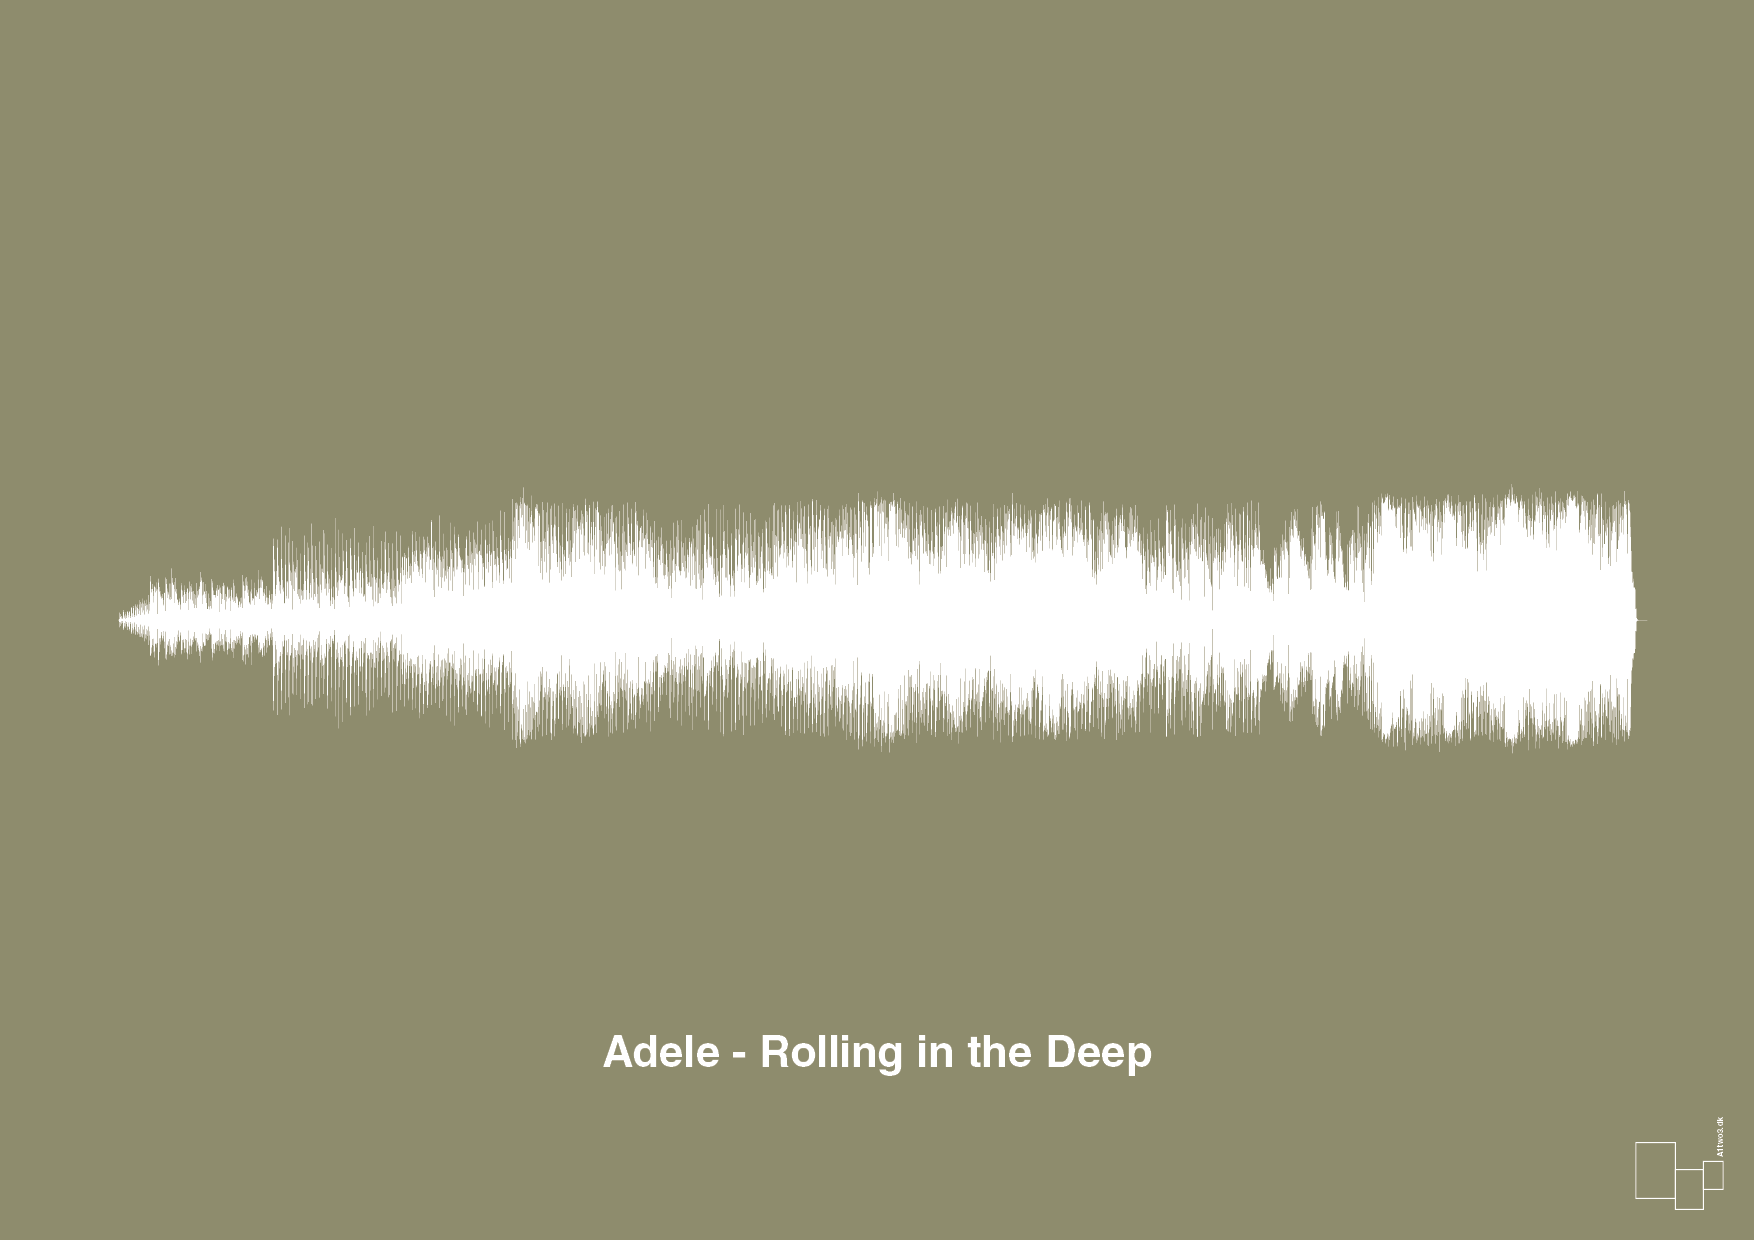 adele - rolling in the deep - Plakat med Musik i Misty Forrest